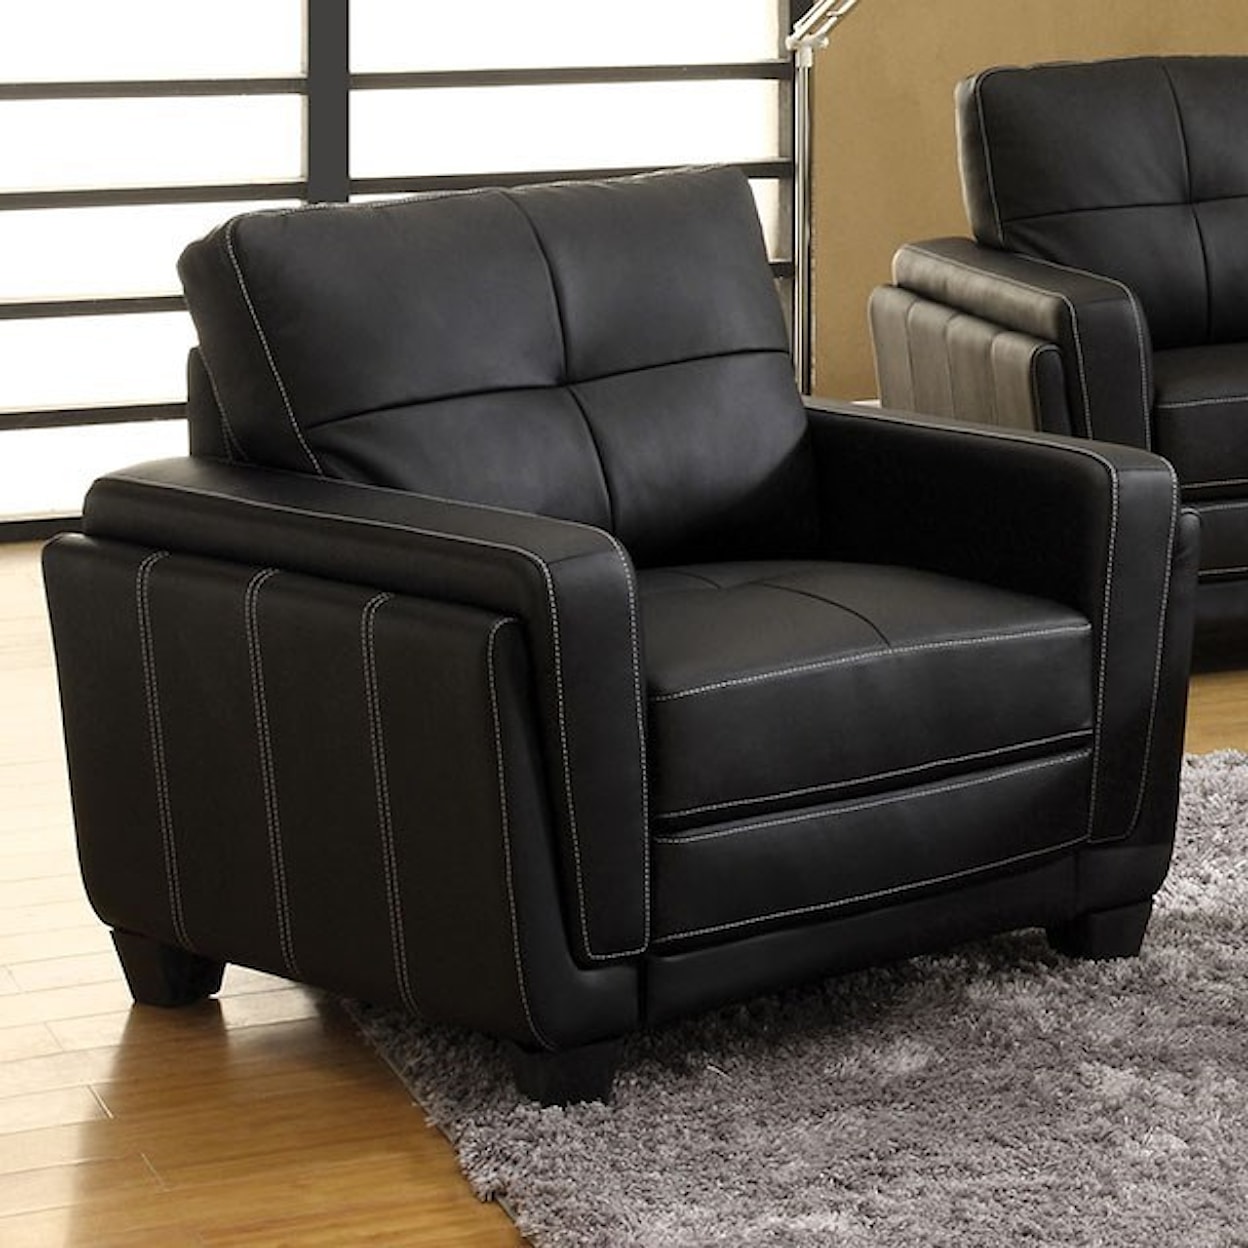 FUSA Blacksburg Sofa + Love Seat + Chair